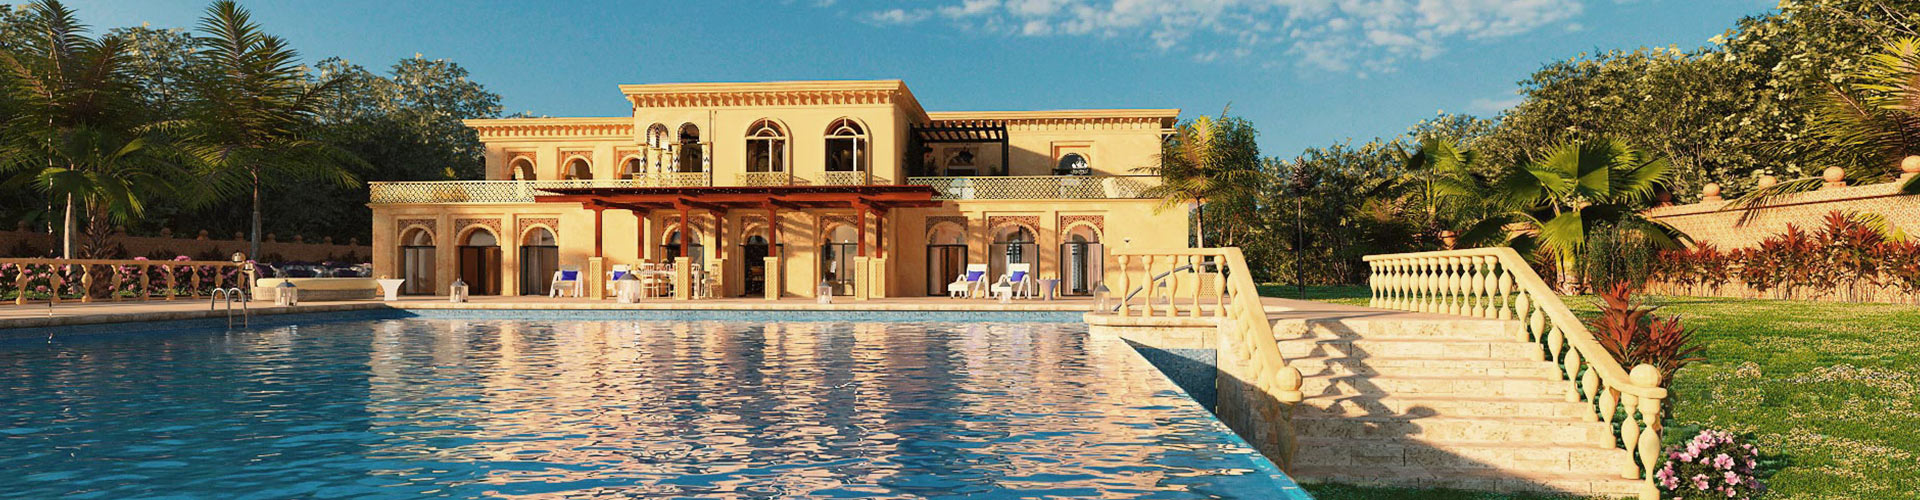 Graphiste 3D architecture villa resorts